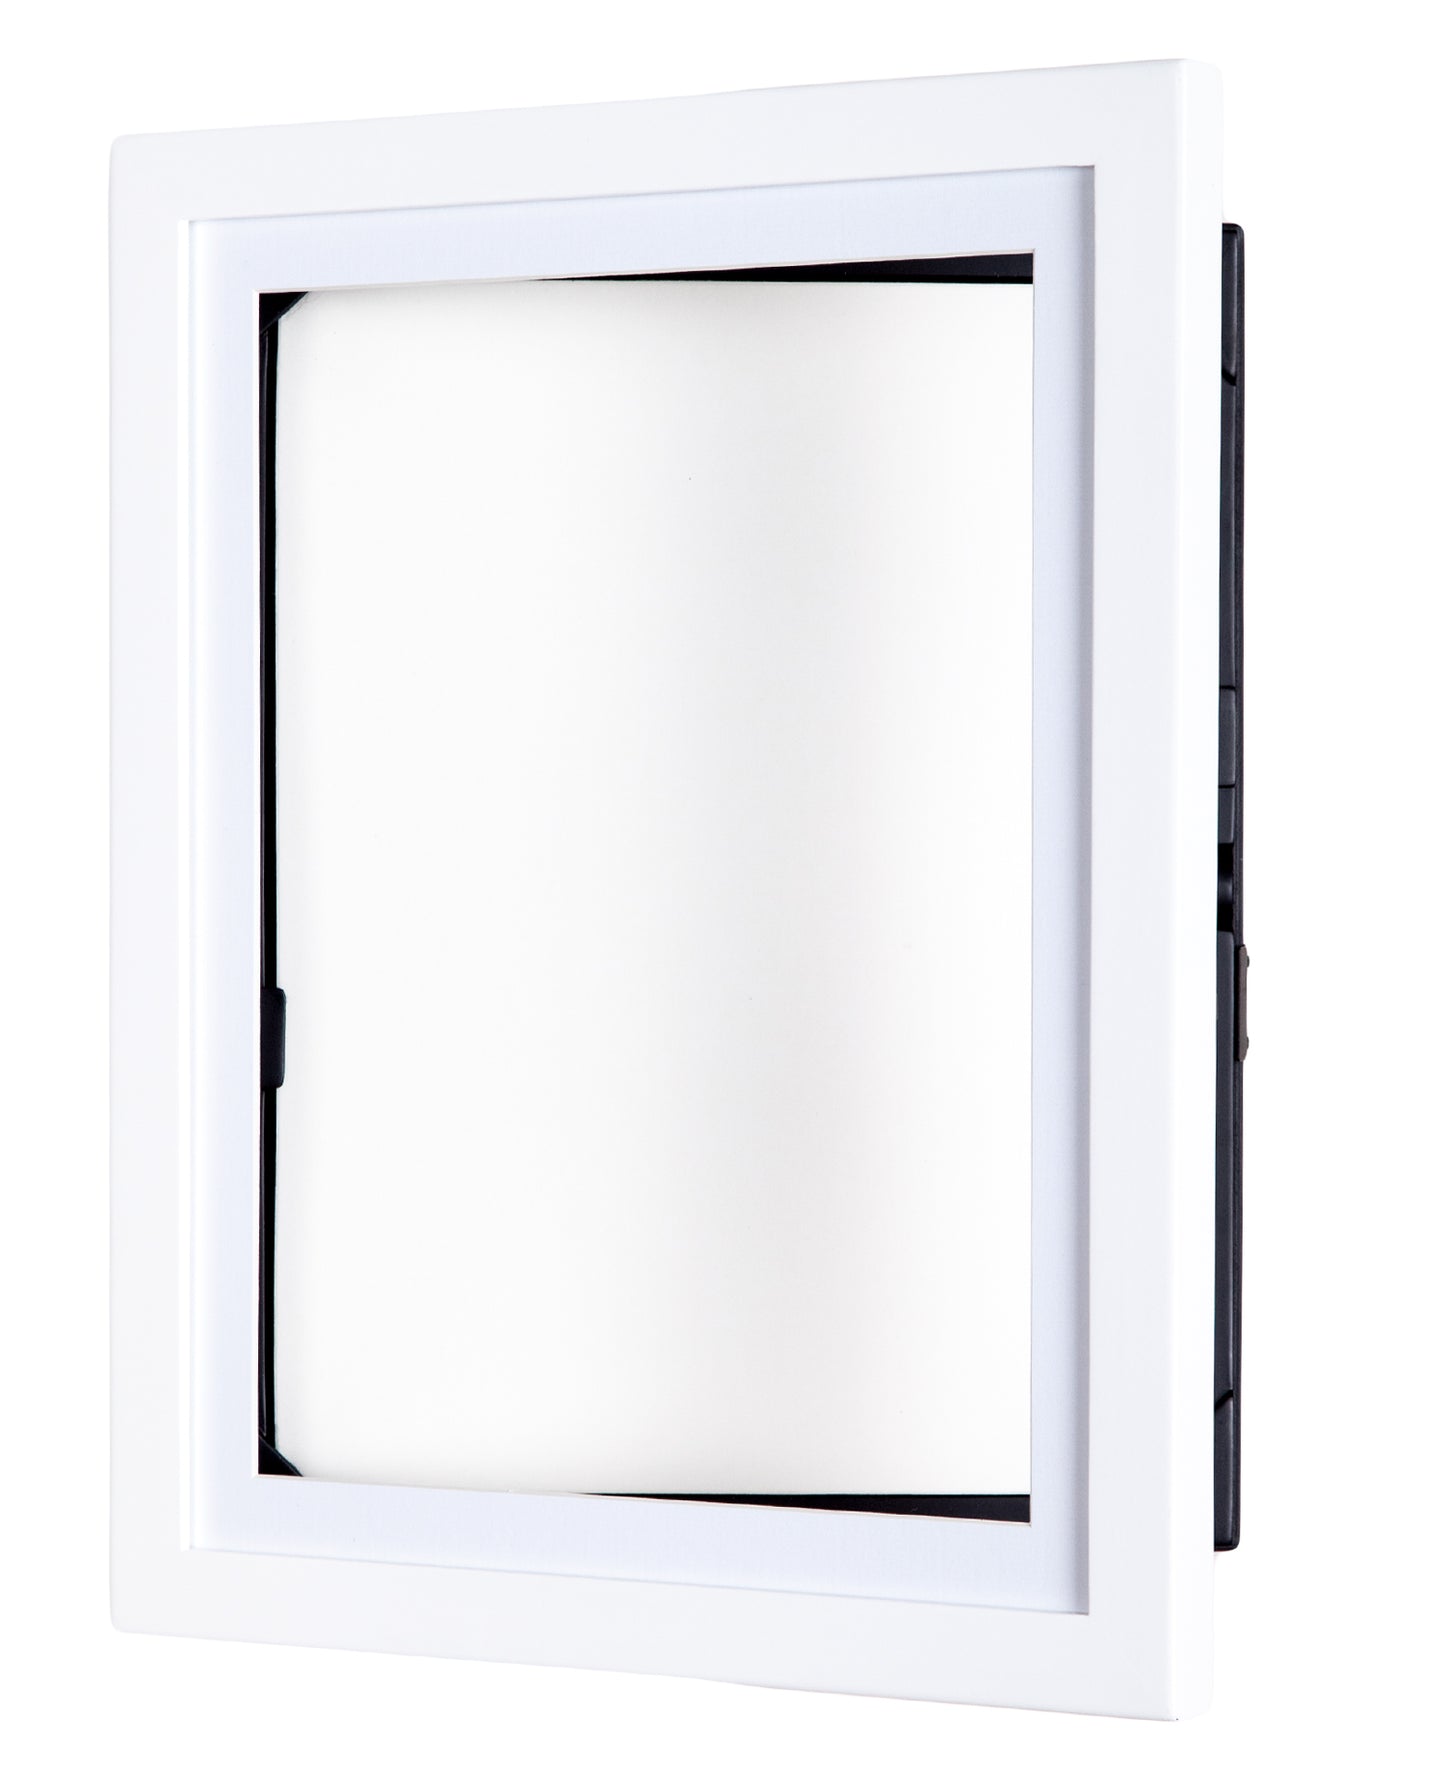 9x12 Lil Davinci® Art Cabinet with EZ Clip